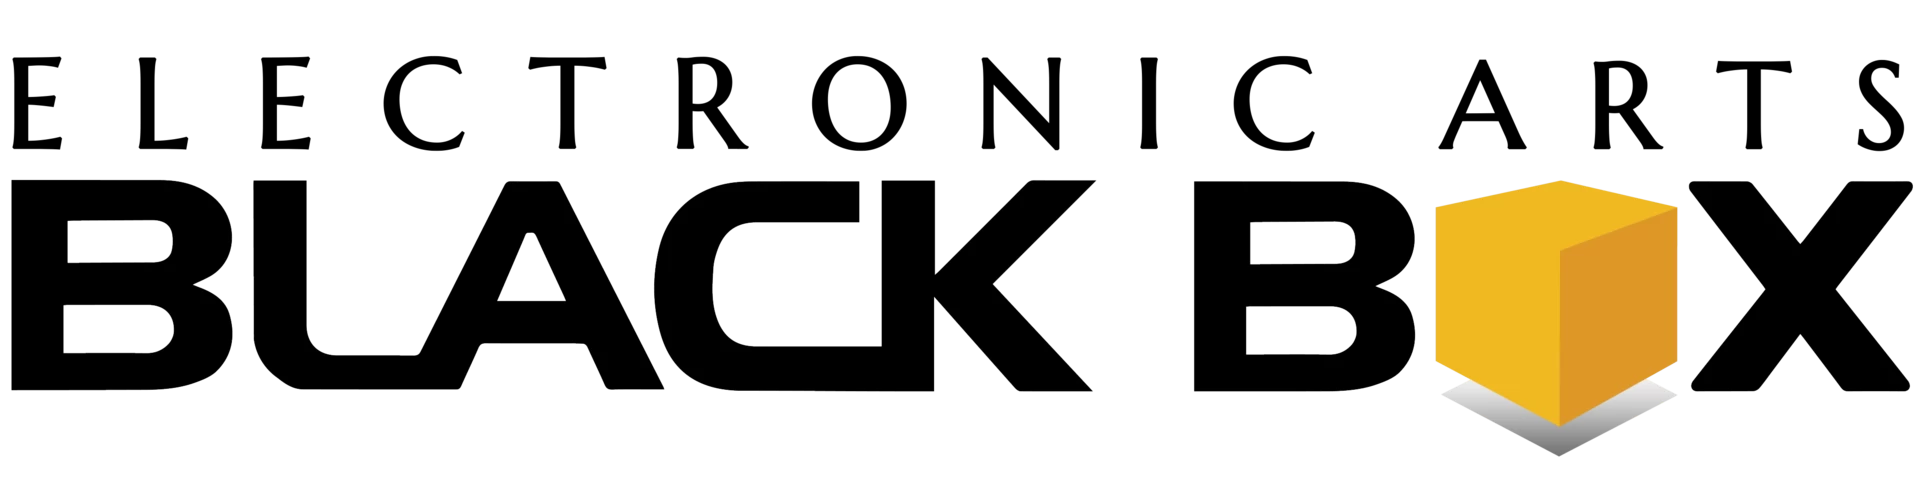 EA Black Box logo